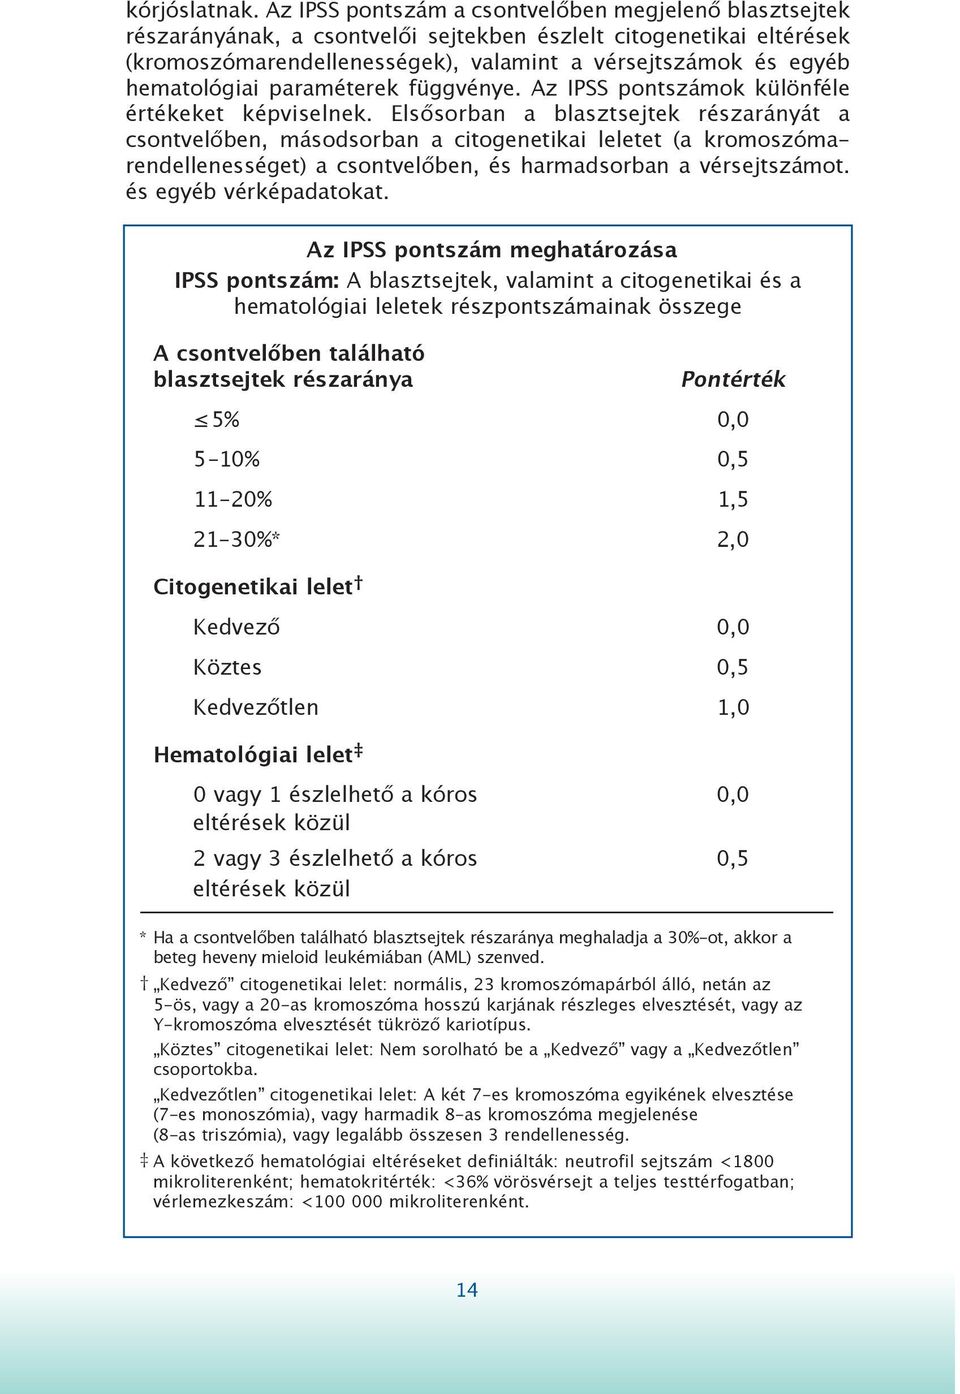 hematológiai paraméterek függvénye. Az IPSS pontszámok különféle értékeket képviselnek.